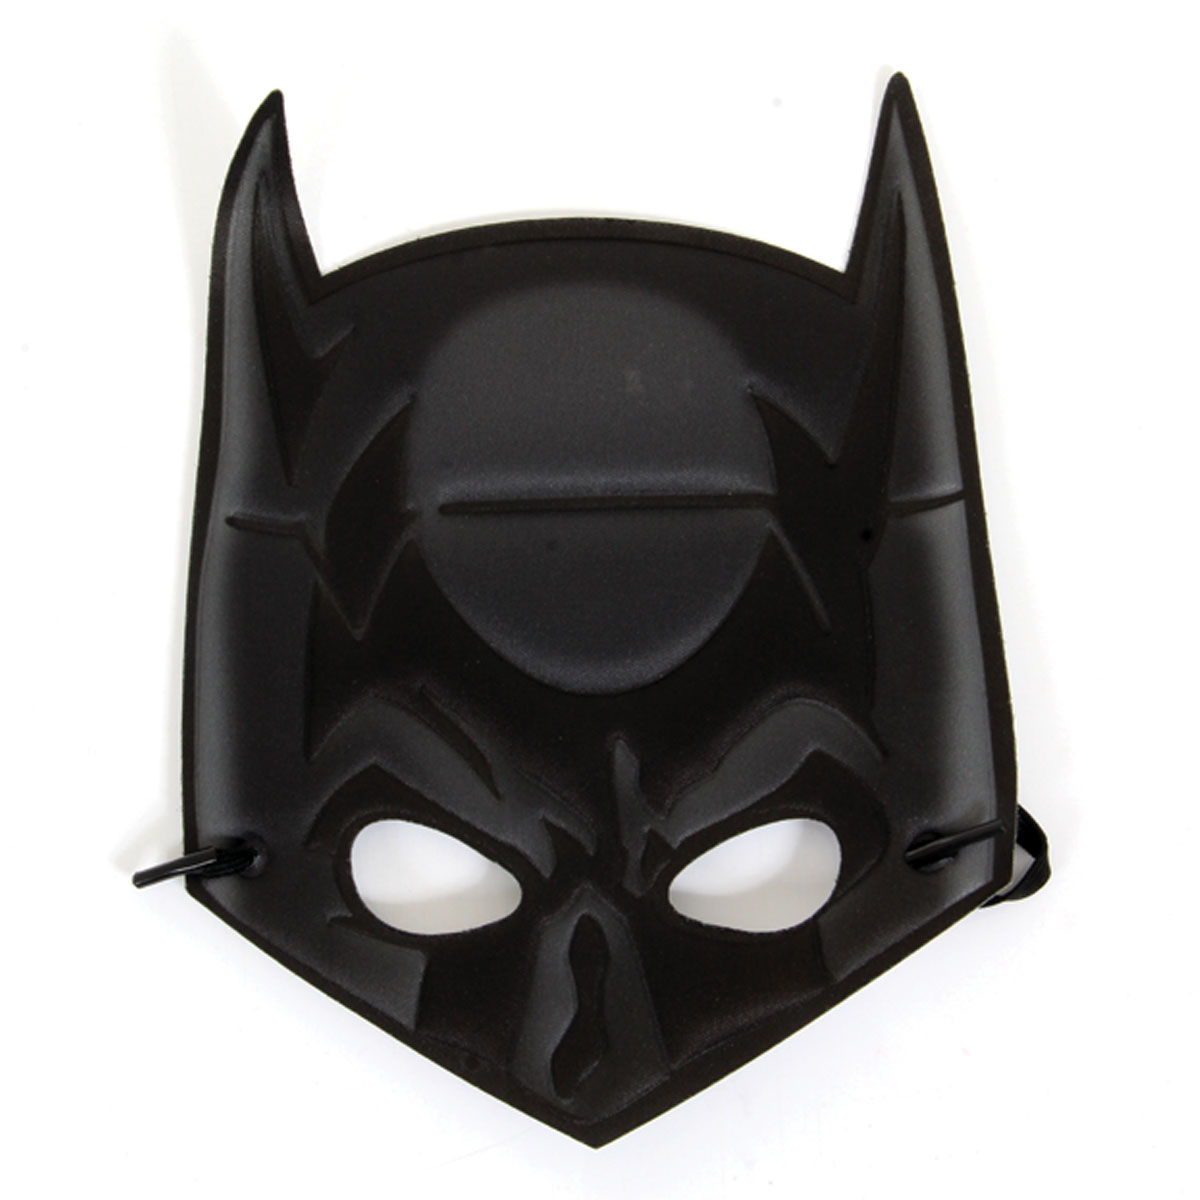 Mascara de Proteção Logo Batman Adulto, Sulamericana Fantasias, Standart,  Cinza/Preto, Tamanho Único